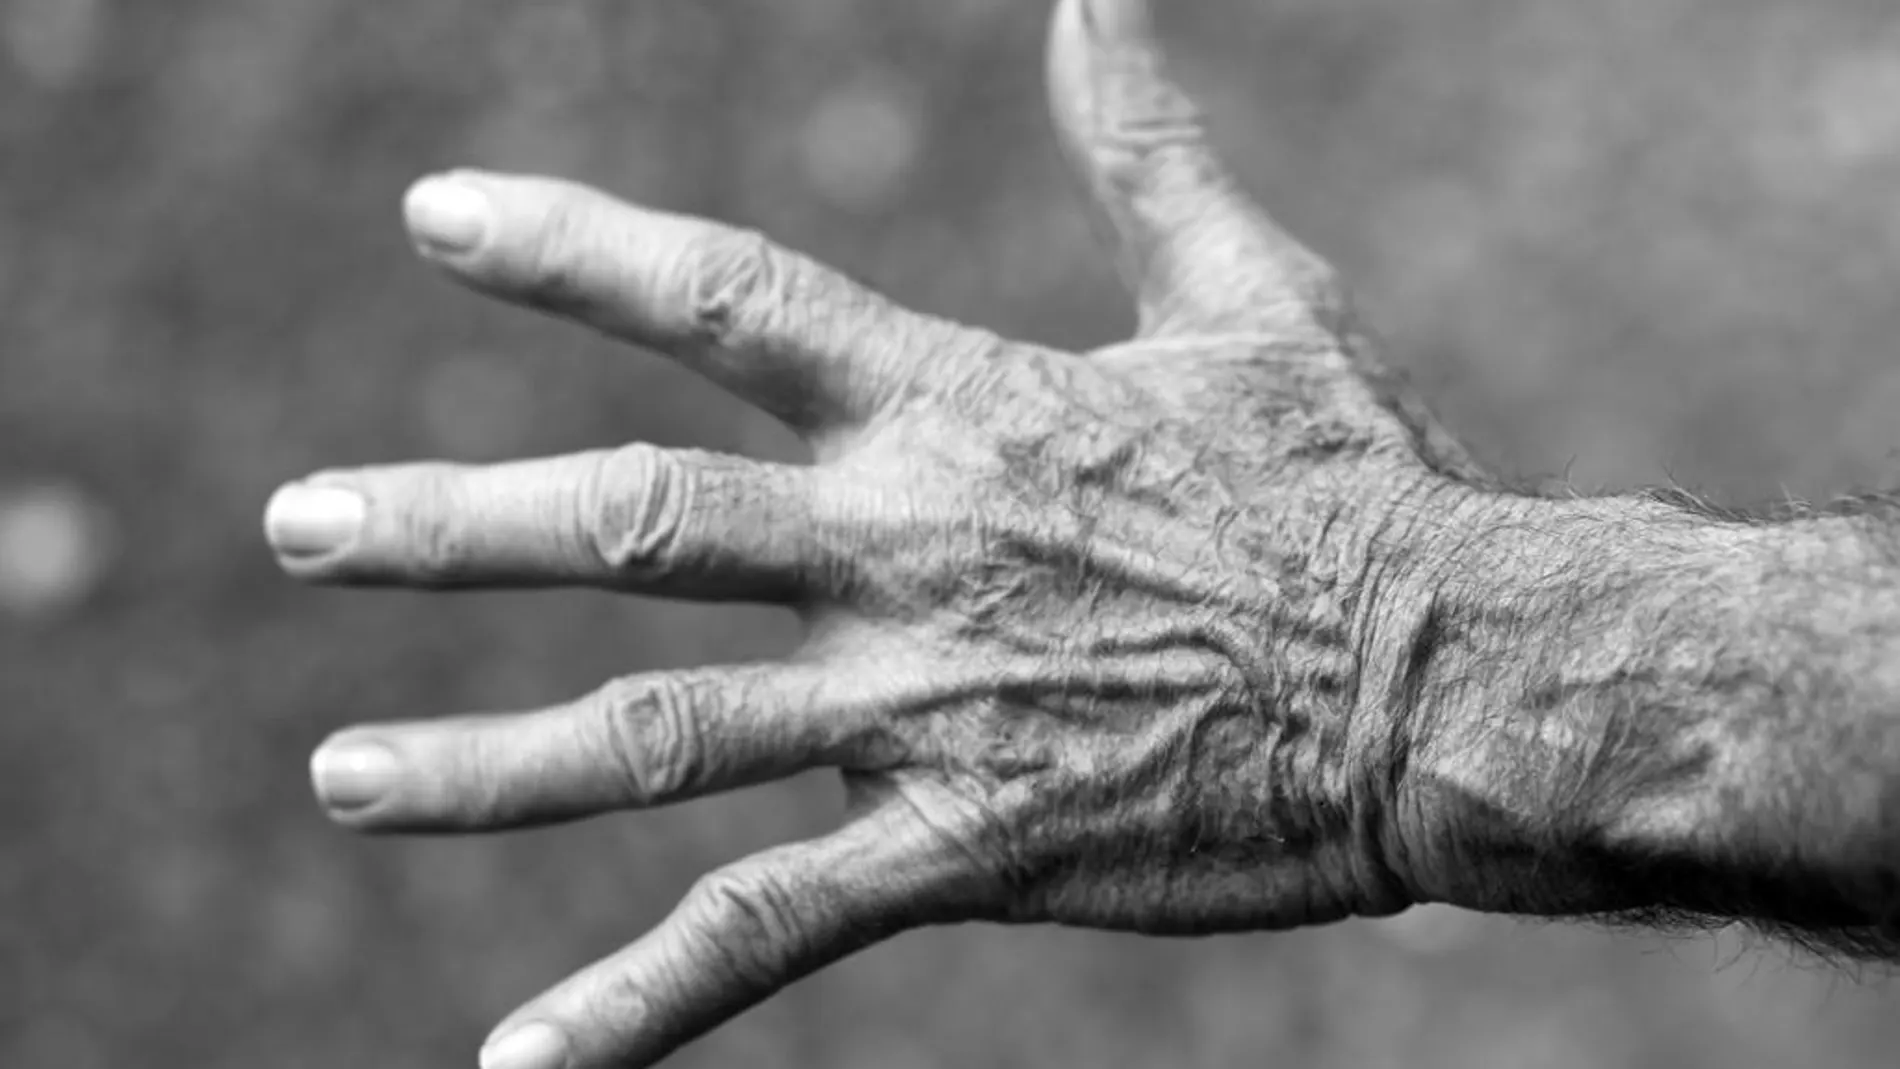 Día Mundial del Parkinson 2021: ¿Es hereditario? ¿Cuál es la esperanza de vida? Todas las dudas sobre la enfermedad